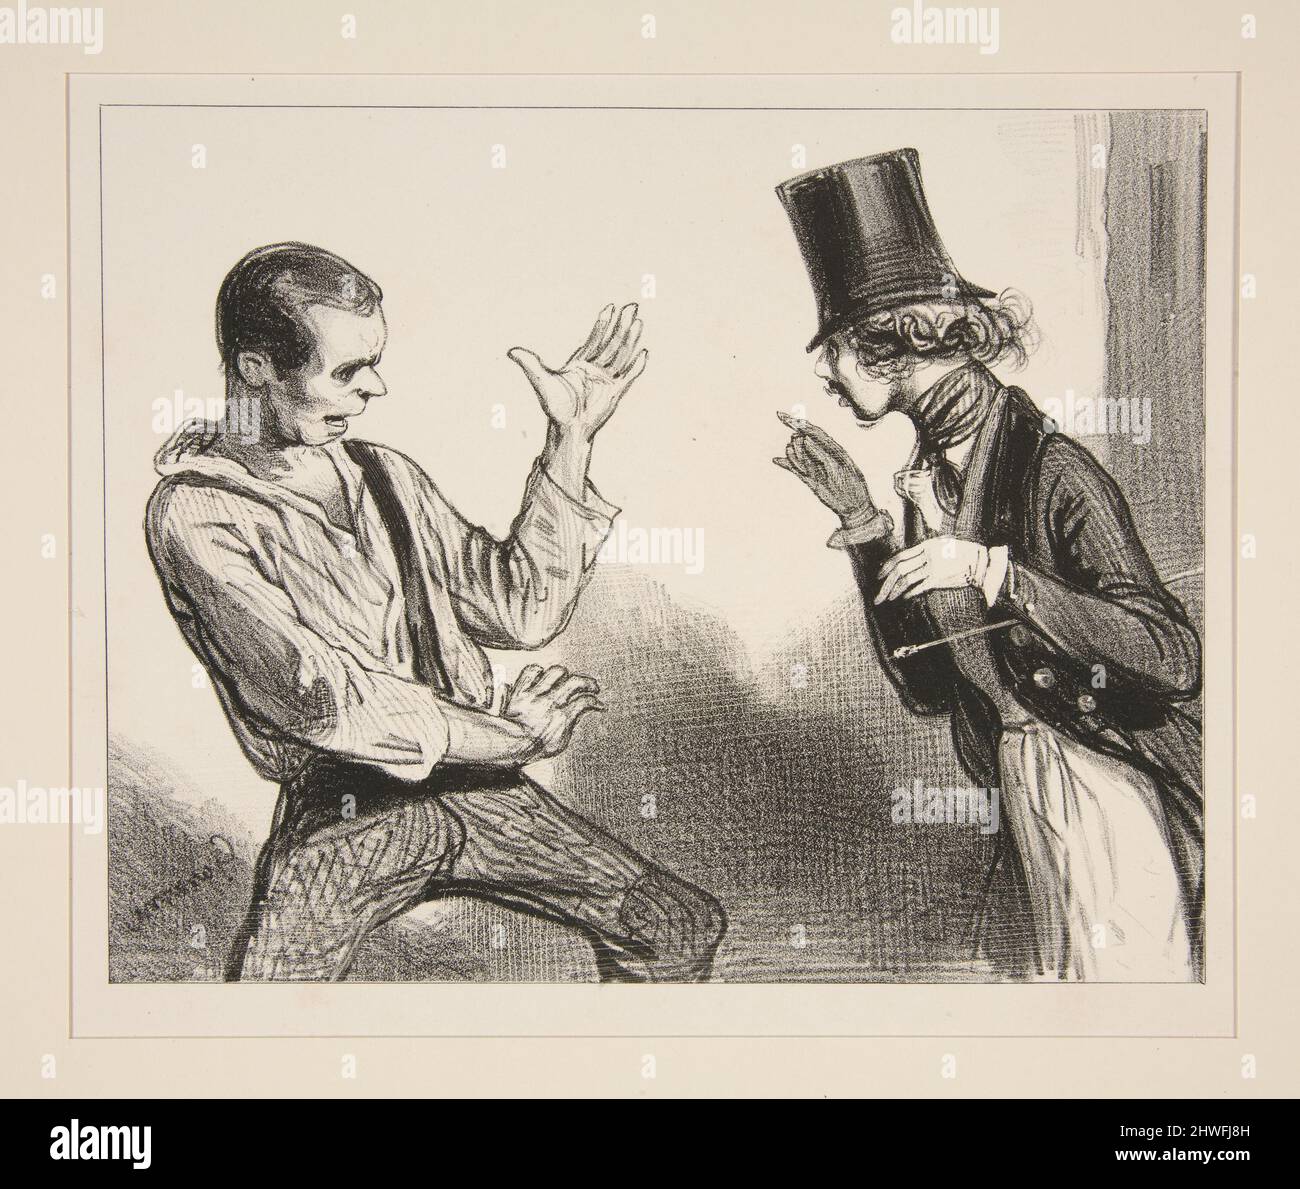 Mais permettez, mon cher Monsieur! j’ai deja eu l’honneur de vous faire observer que….  Artist: Paul Gavarni, French, 1804–1866 Stock Photo